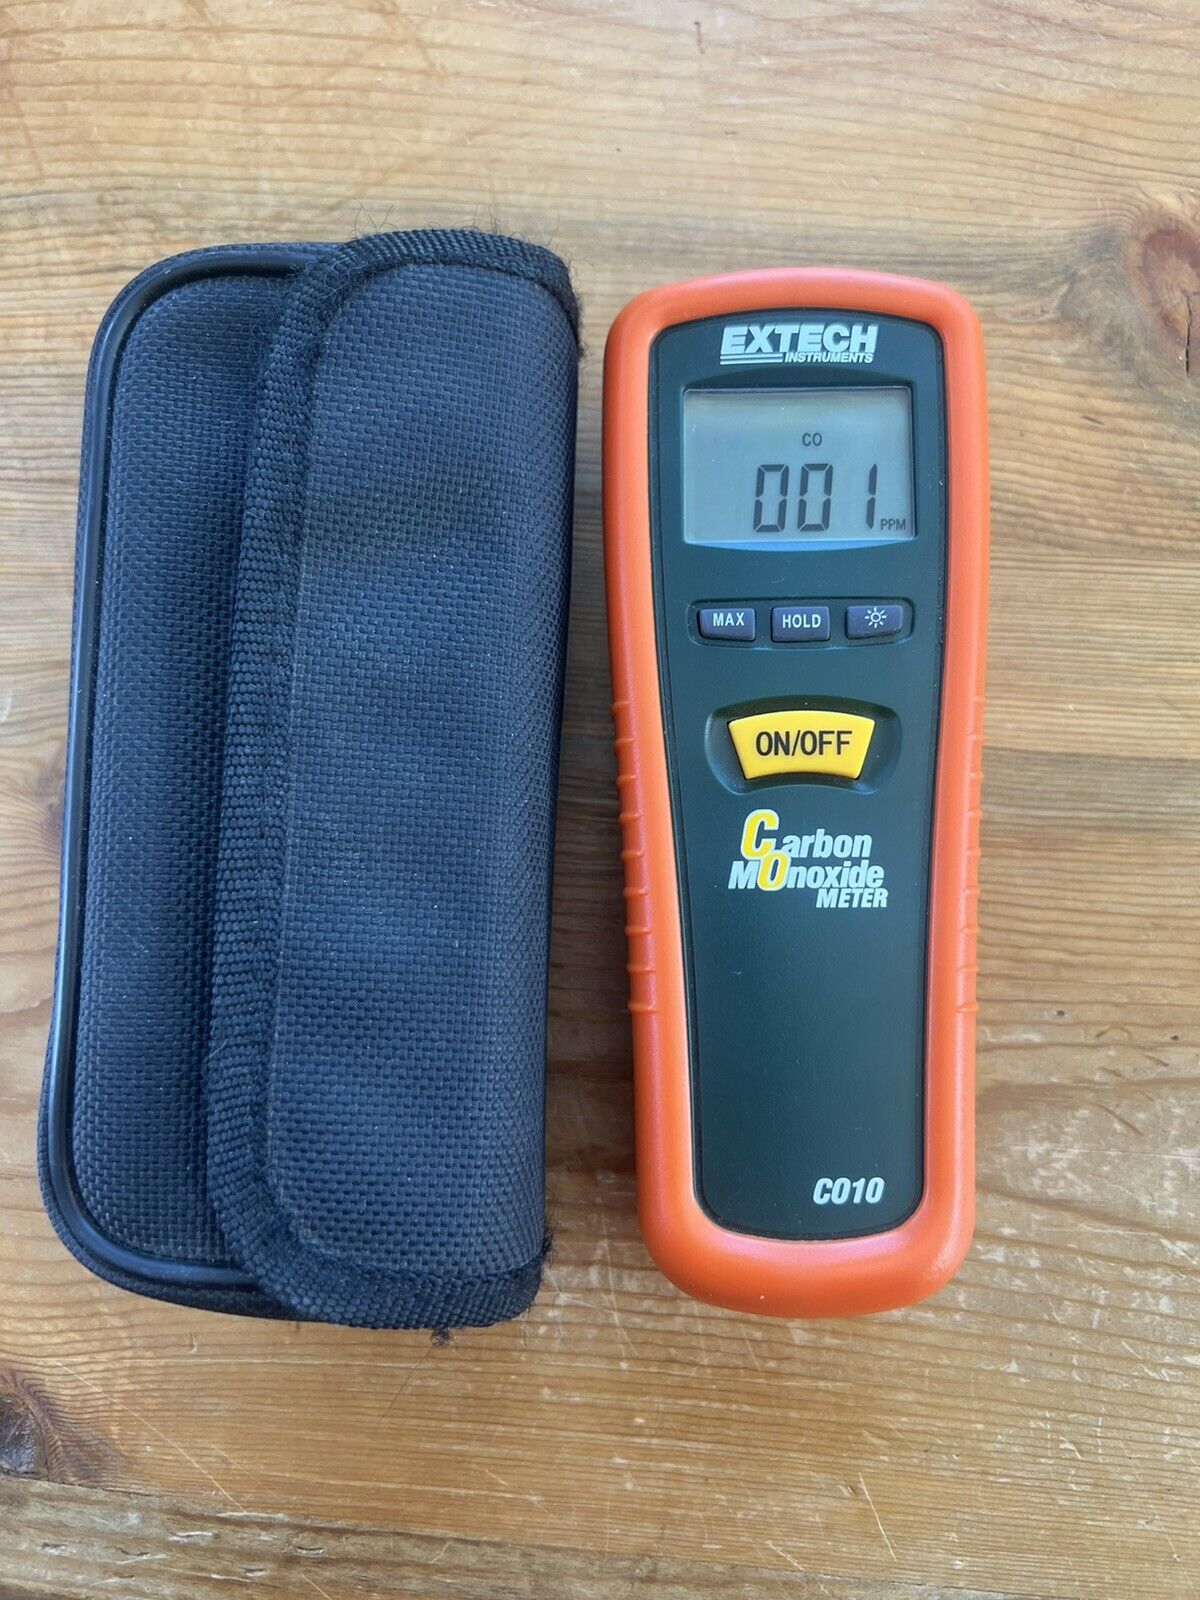 Extech Co10 Carbon Monoxide Meter